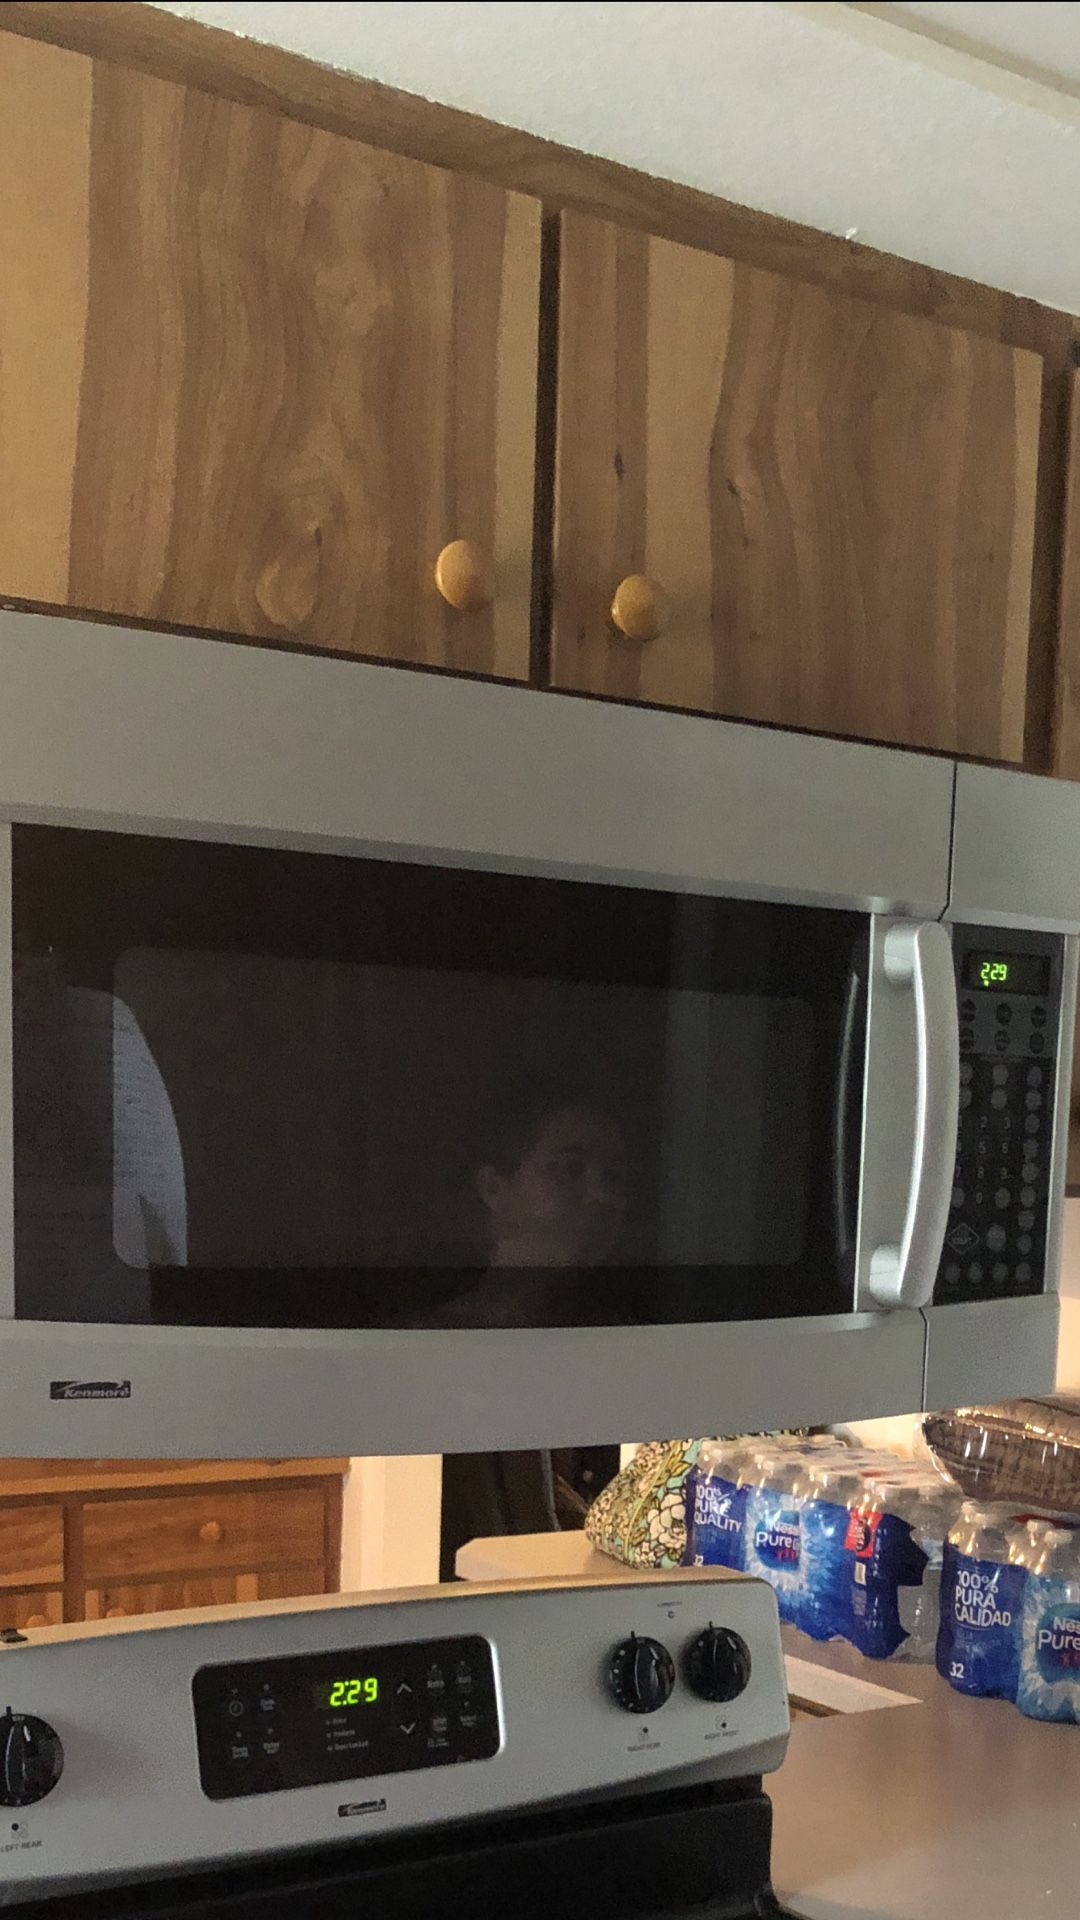 Microwave